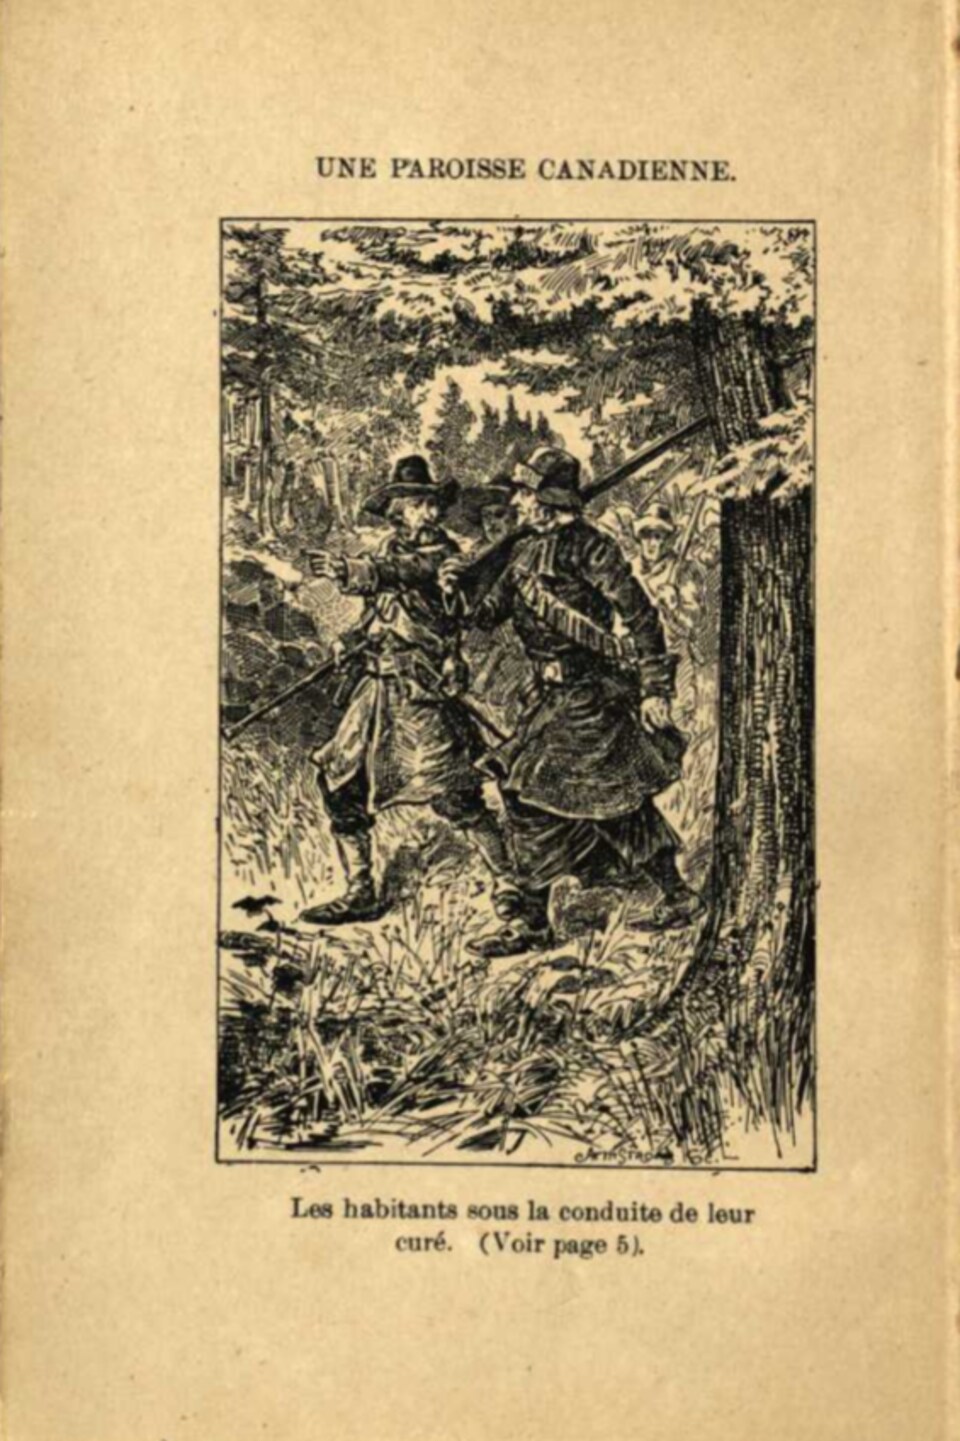 Sur la page jaunie d'un livre ancien, le dessin de trois personnages de la Nouvelle-France.